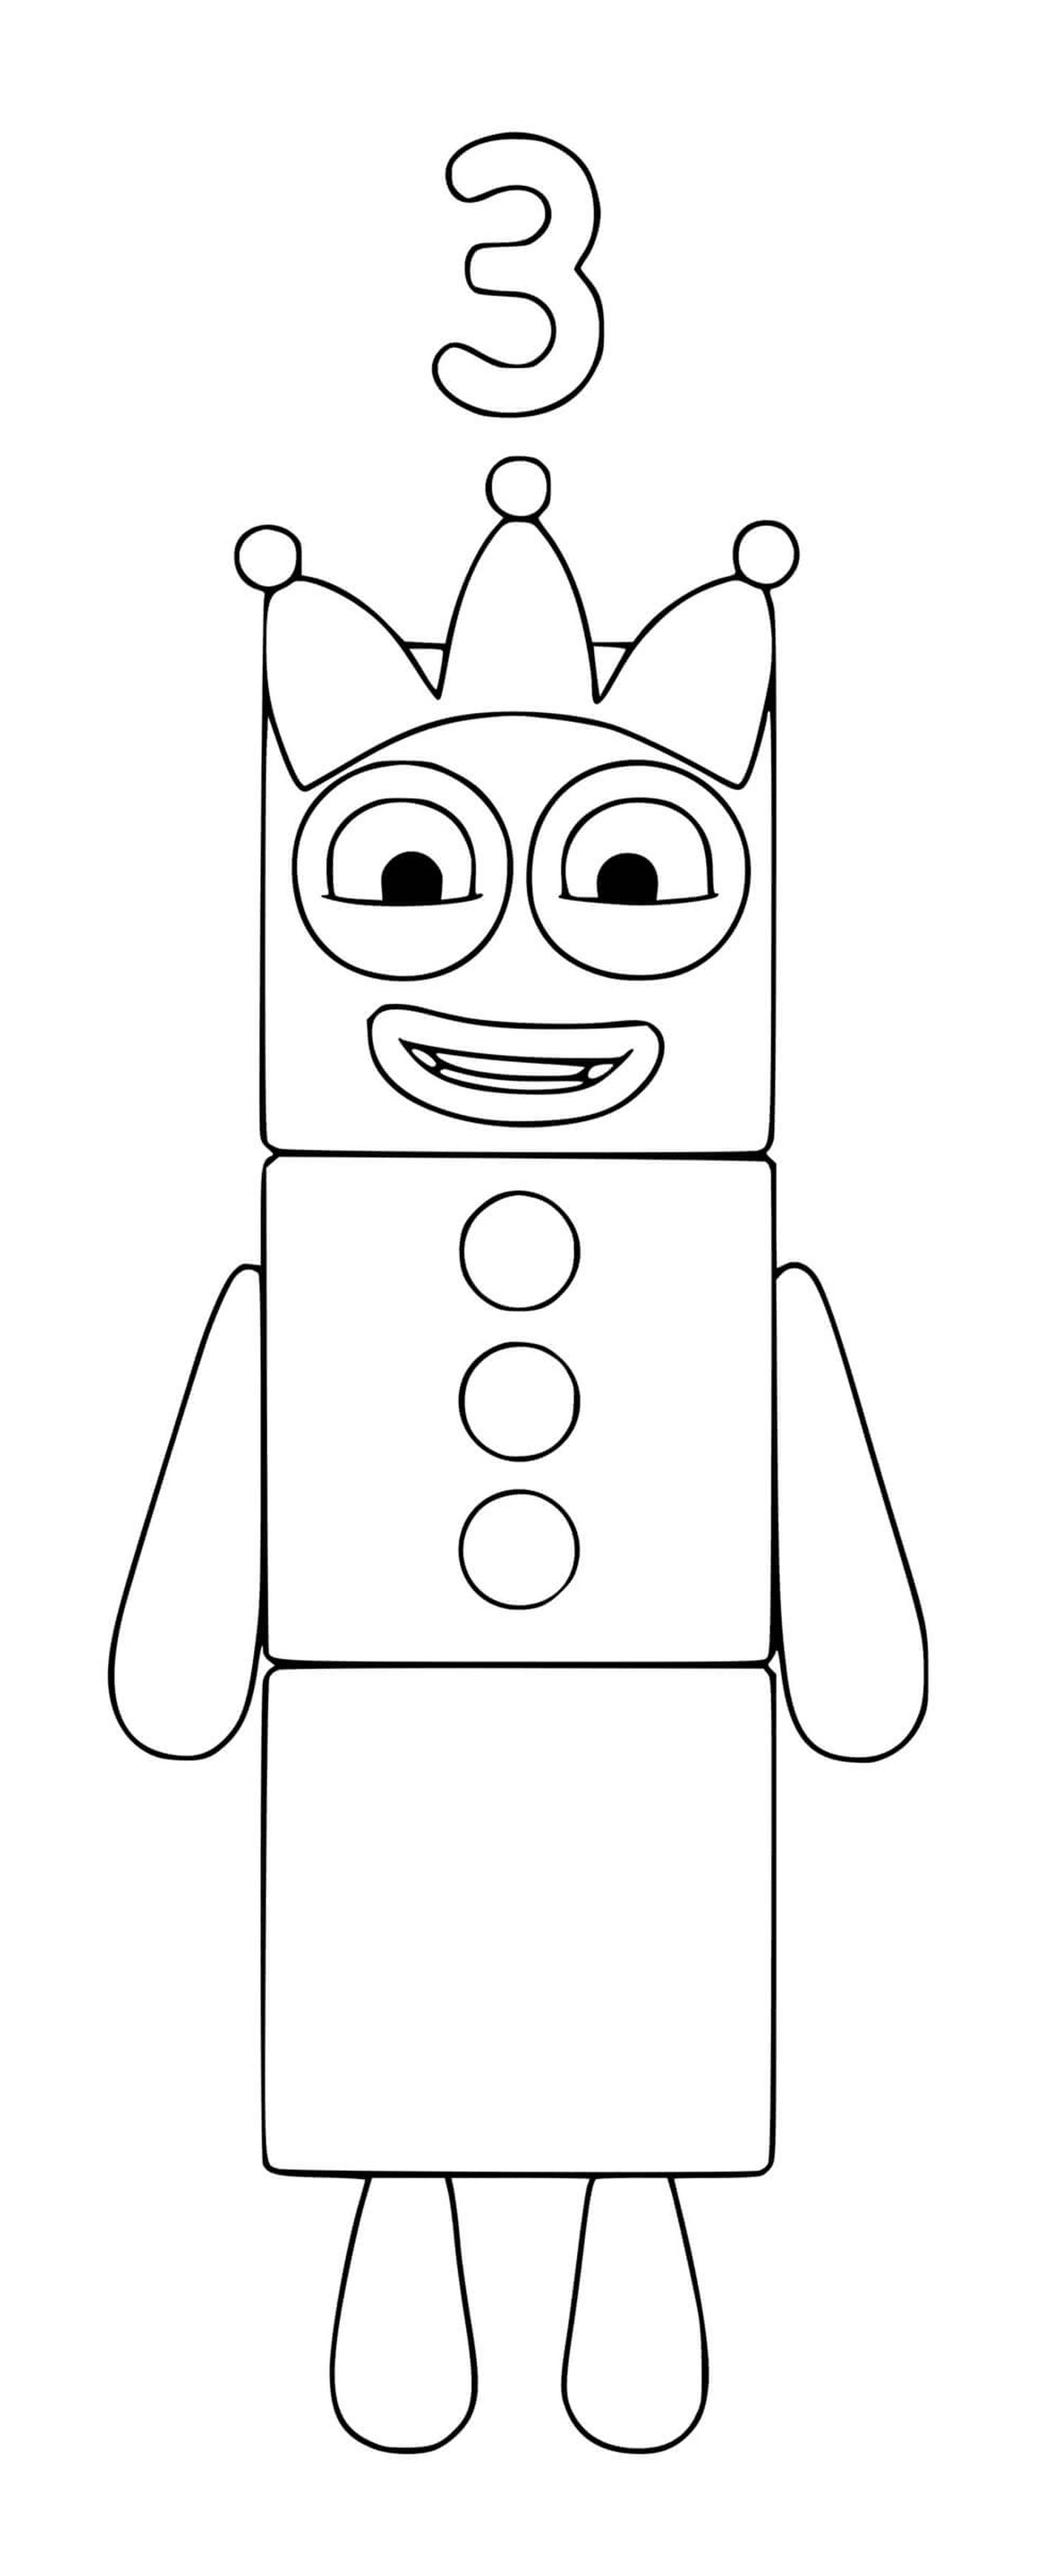  Номерные блоки номер 3, игрушечный робот 